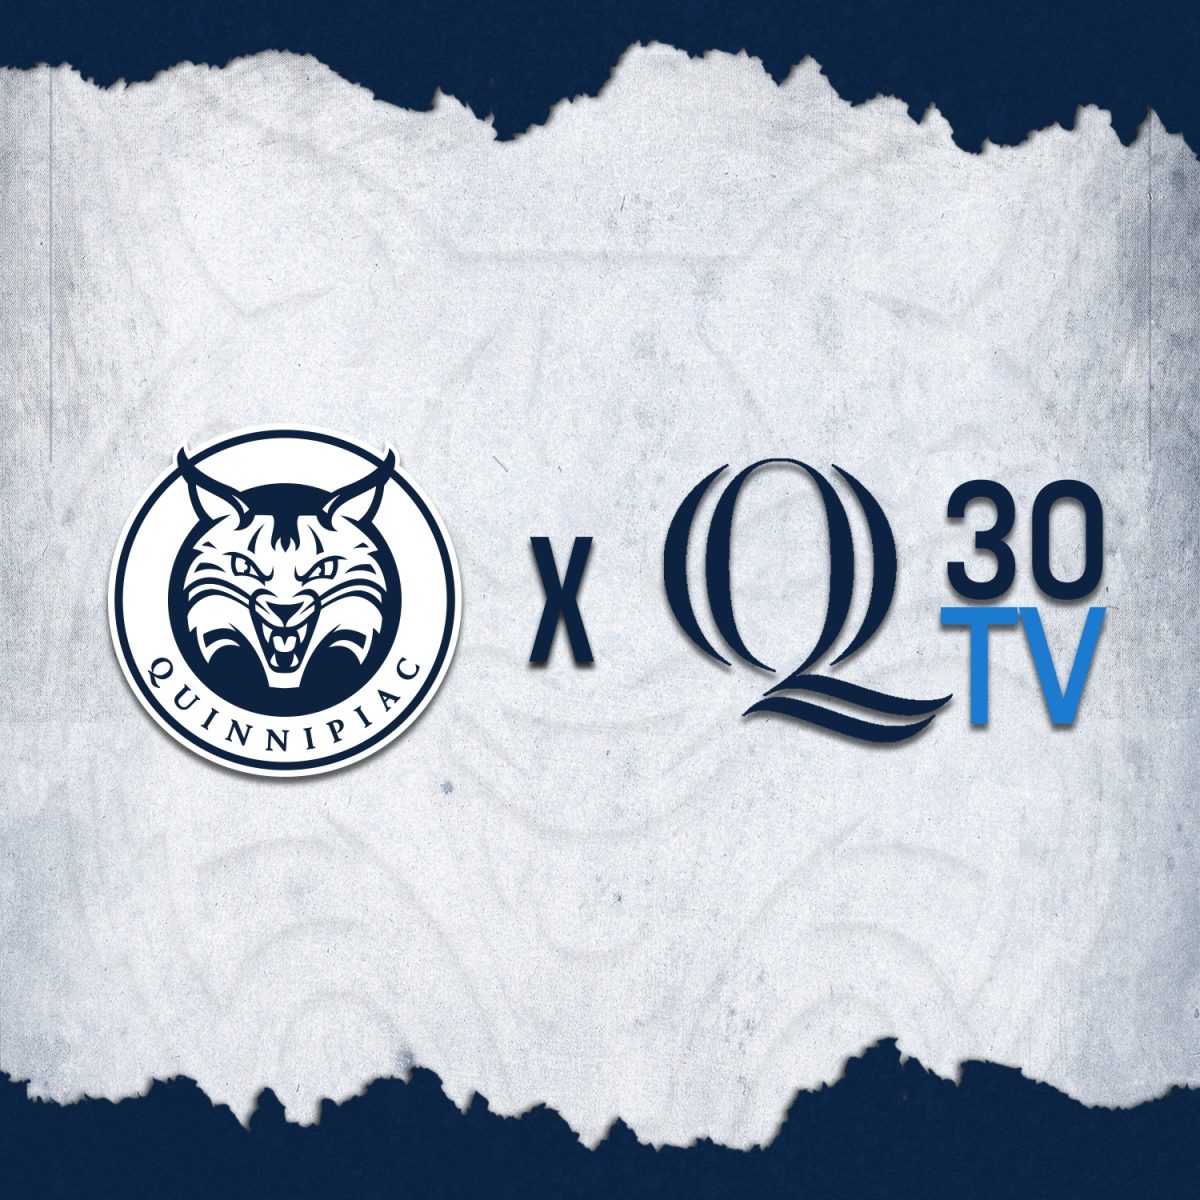 Q30 Television announces new partnership with Quinnipiac Athletics